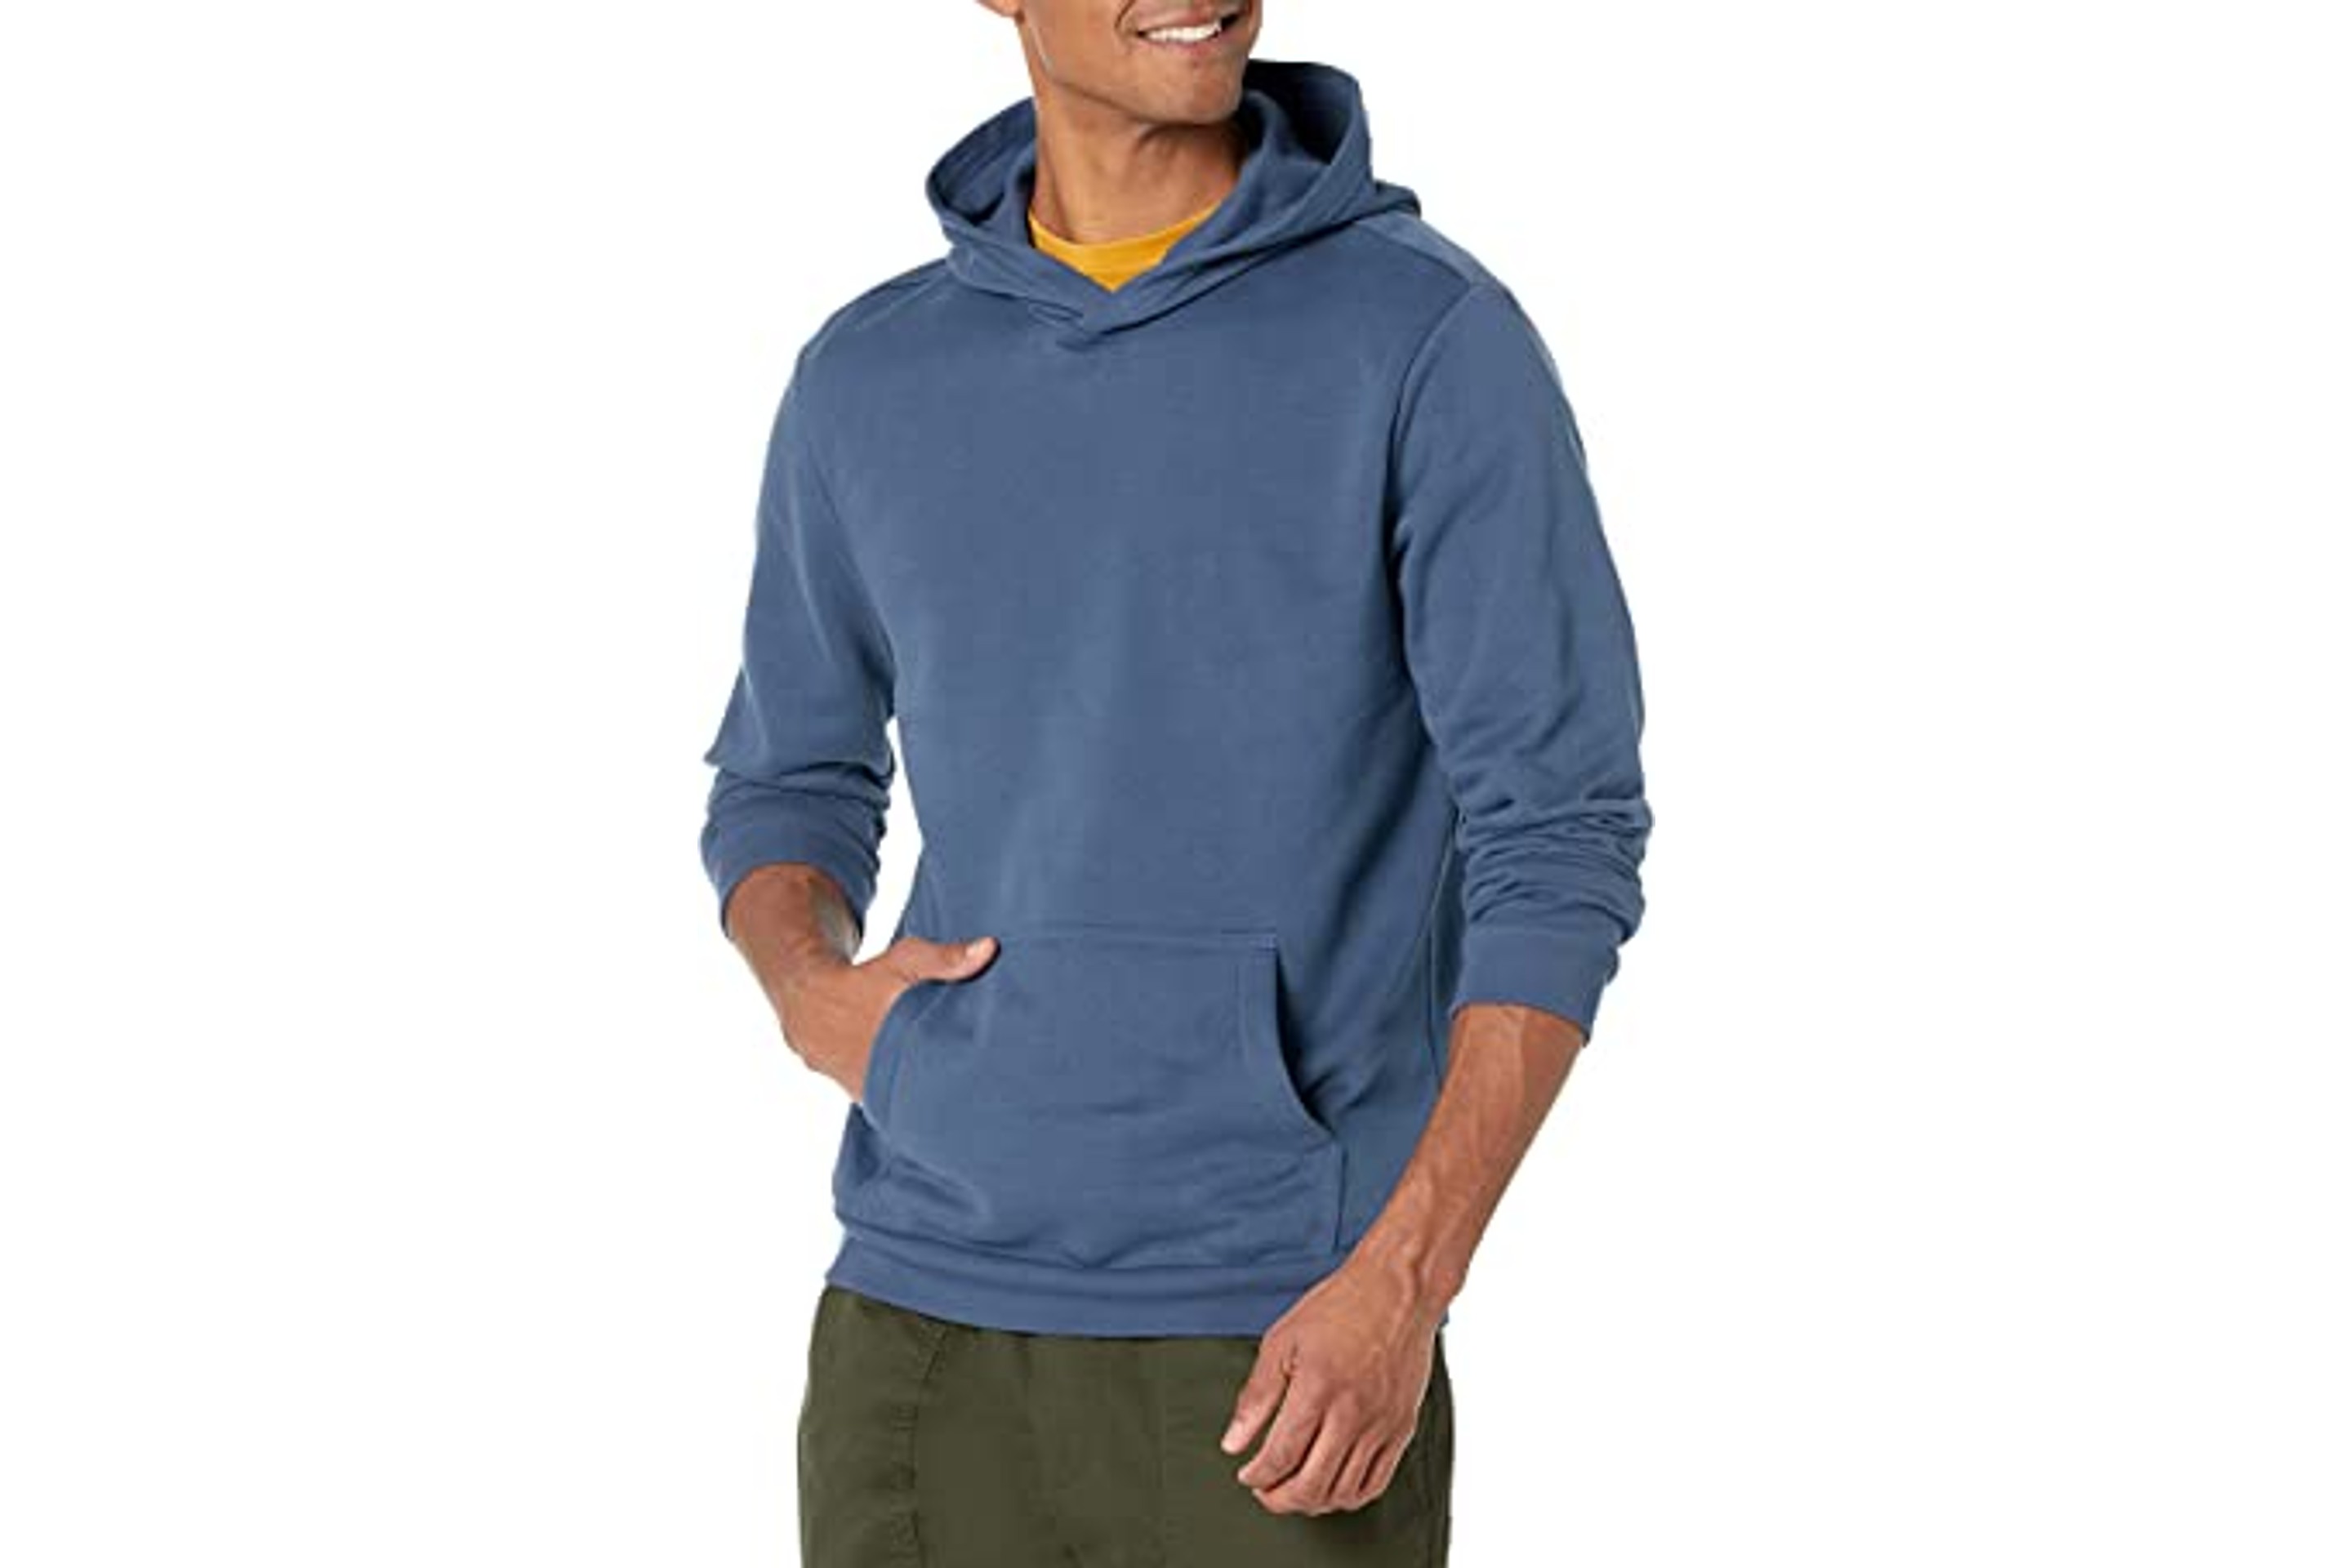 Men's Vintage Hooded Sweatshirt